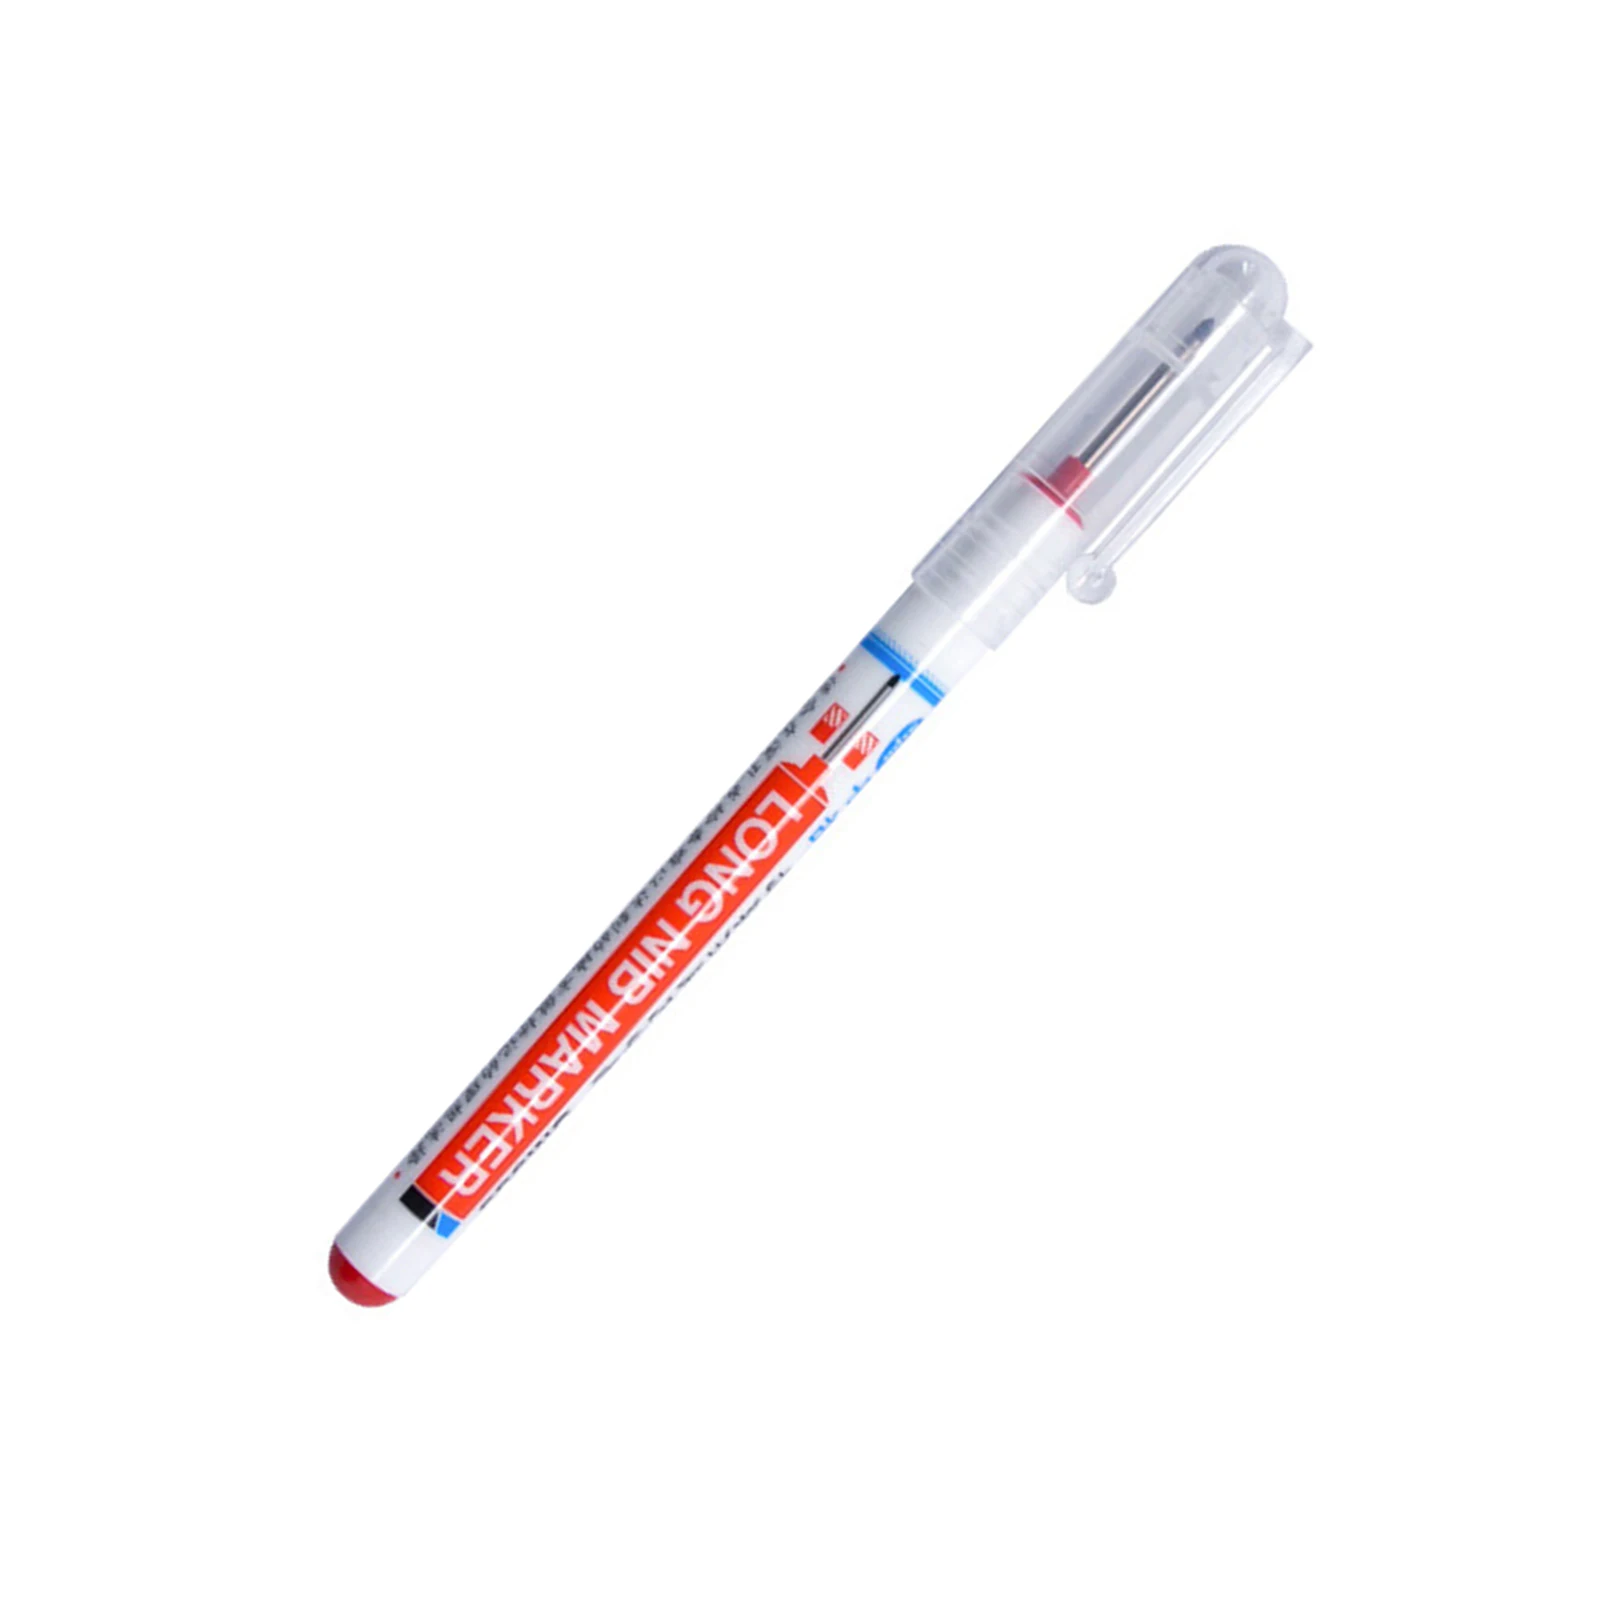 4Pcs Multipurpose Deep Hole Marker Pens, Lightweight Water